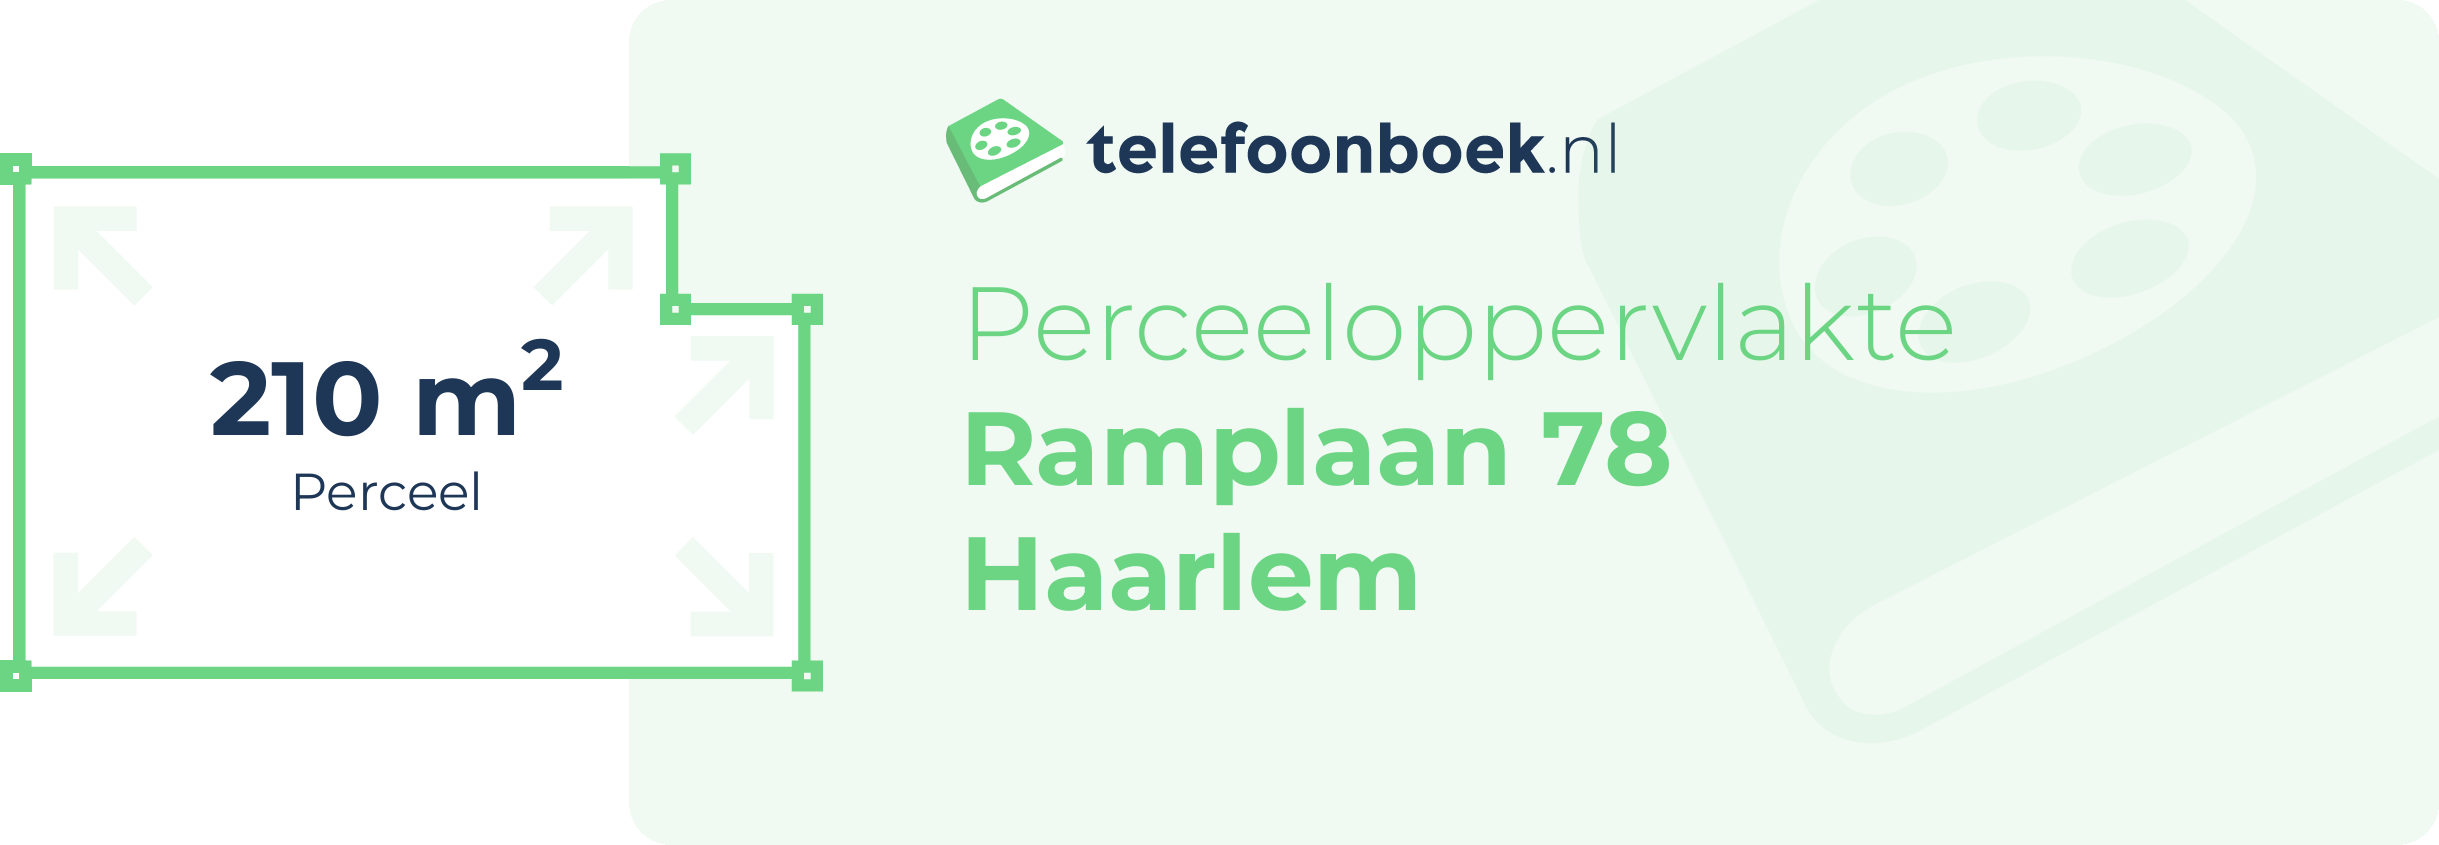 Perceeloppervlakte Ramplaan 78 Haarlem